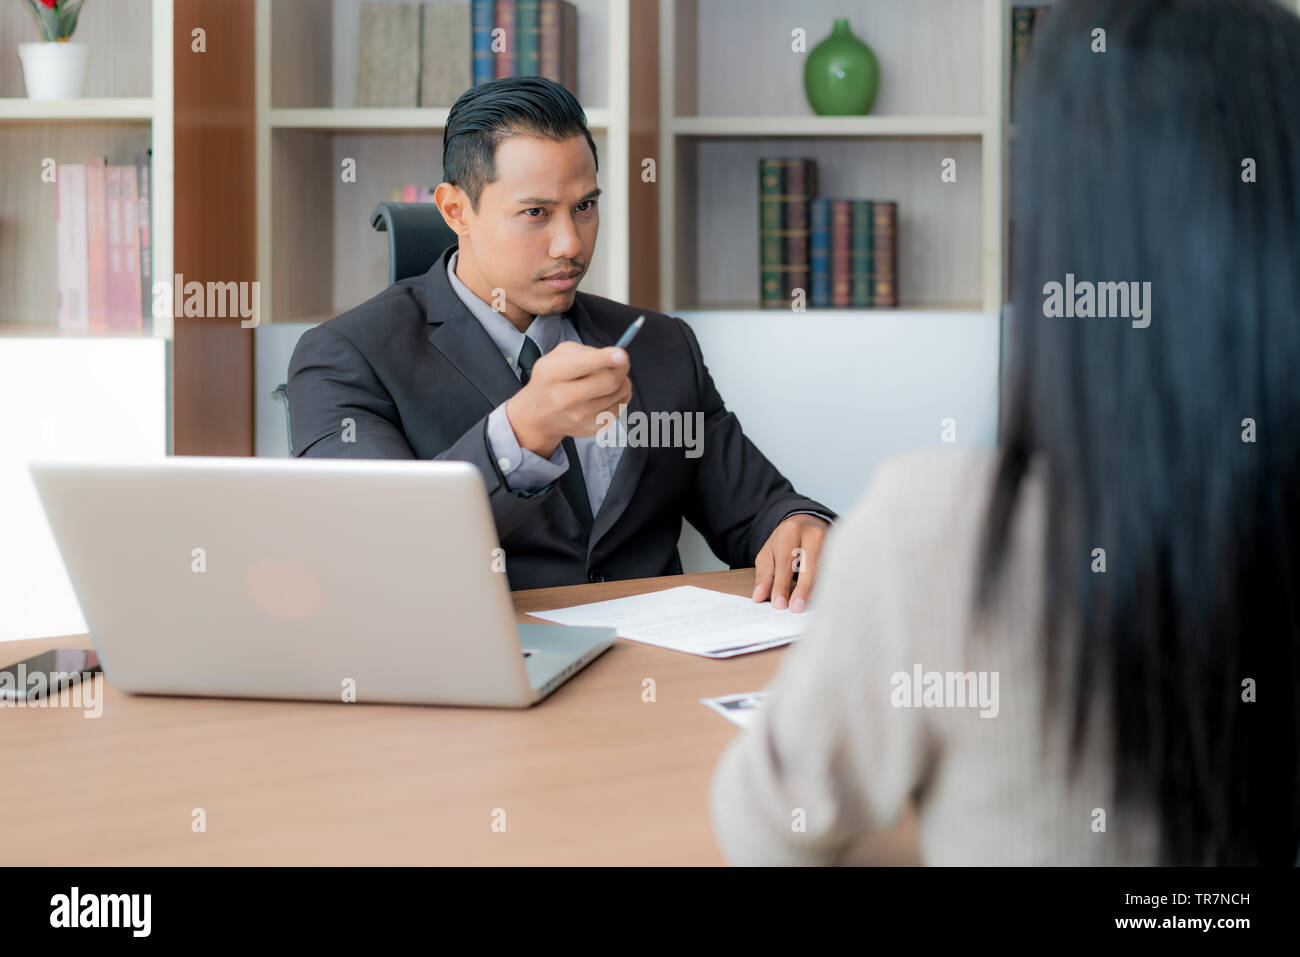 Vorstellungsgespräch, asiatische Geschäftsmann Manager hören Sie Kandidaten Antworten für Vorstellungsgespräch. Stockfoto